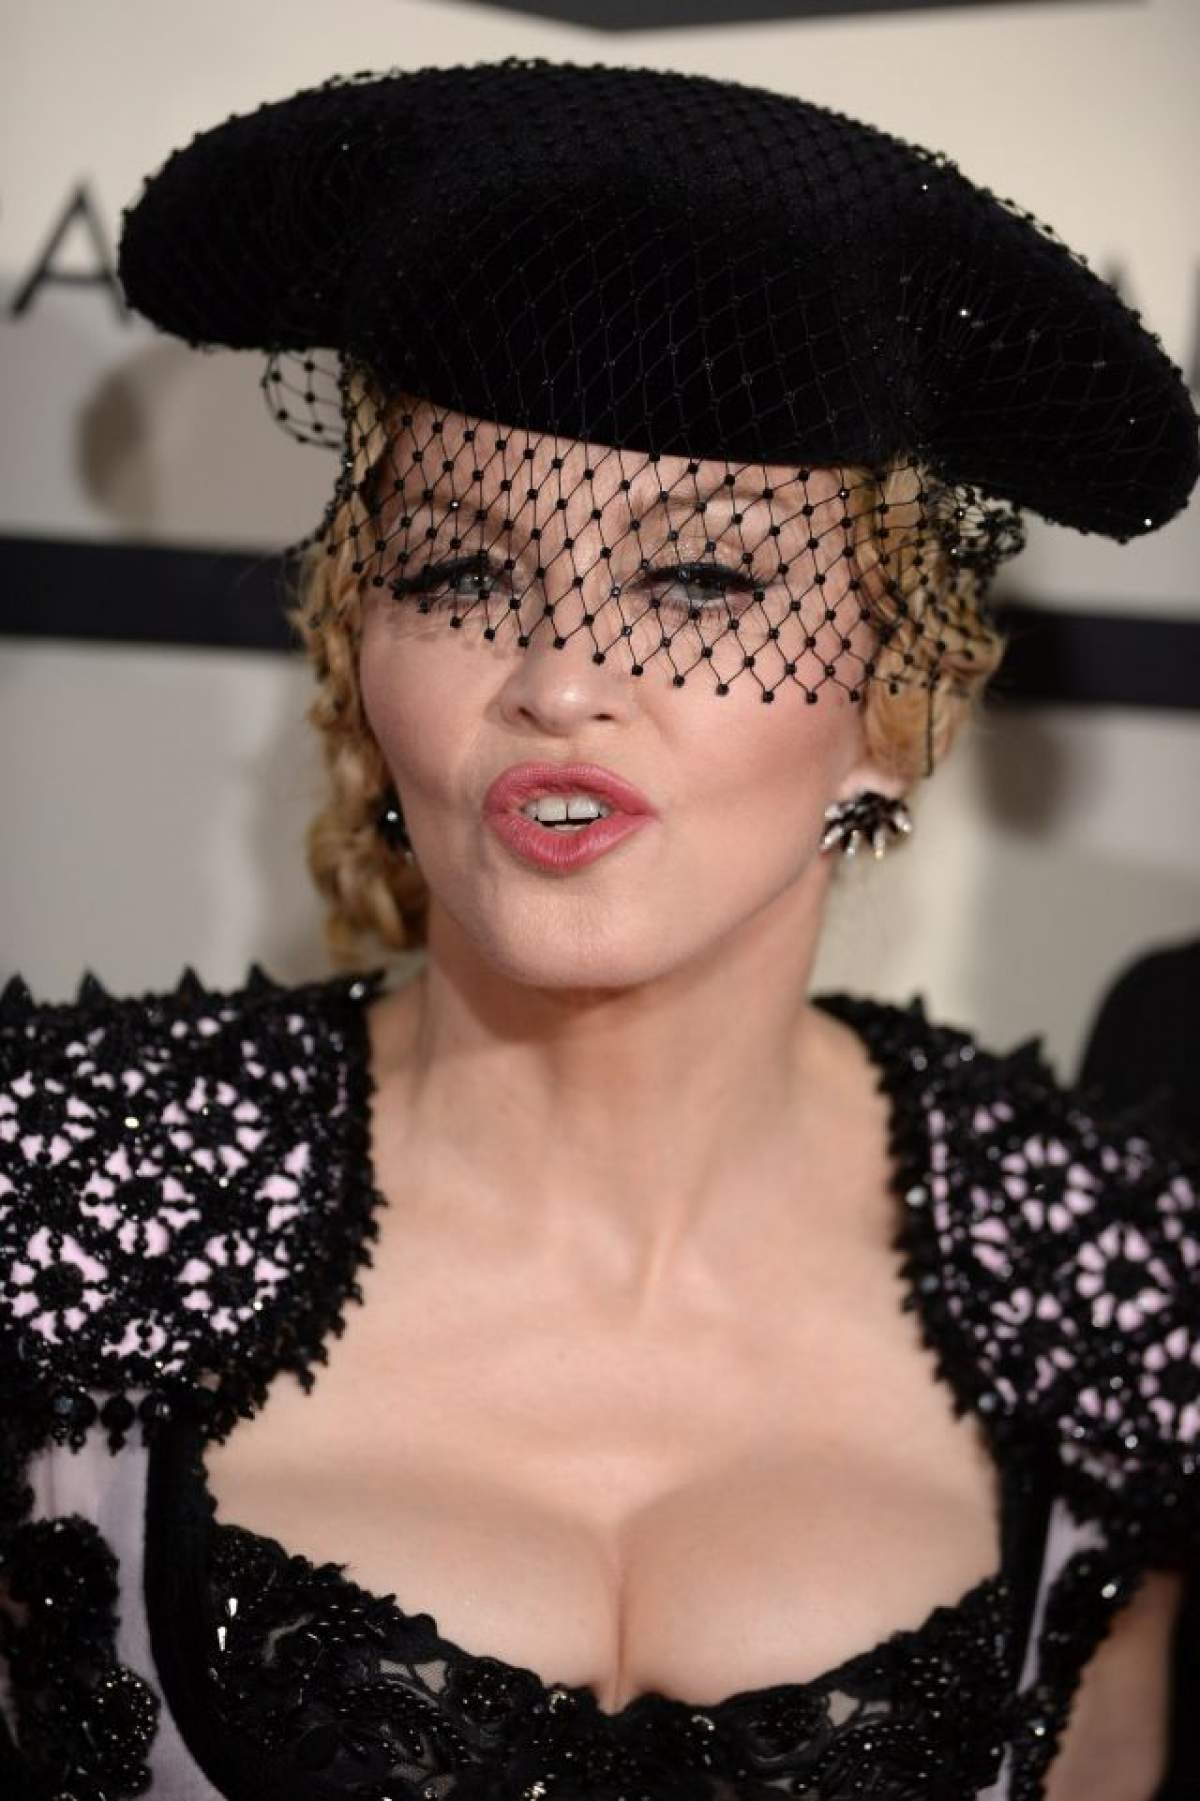 VIDEO / Madonna, confesiune şocantă! Artista şi-a învăţat fiica cum să se drogheze: "Da, am făcut-o"